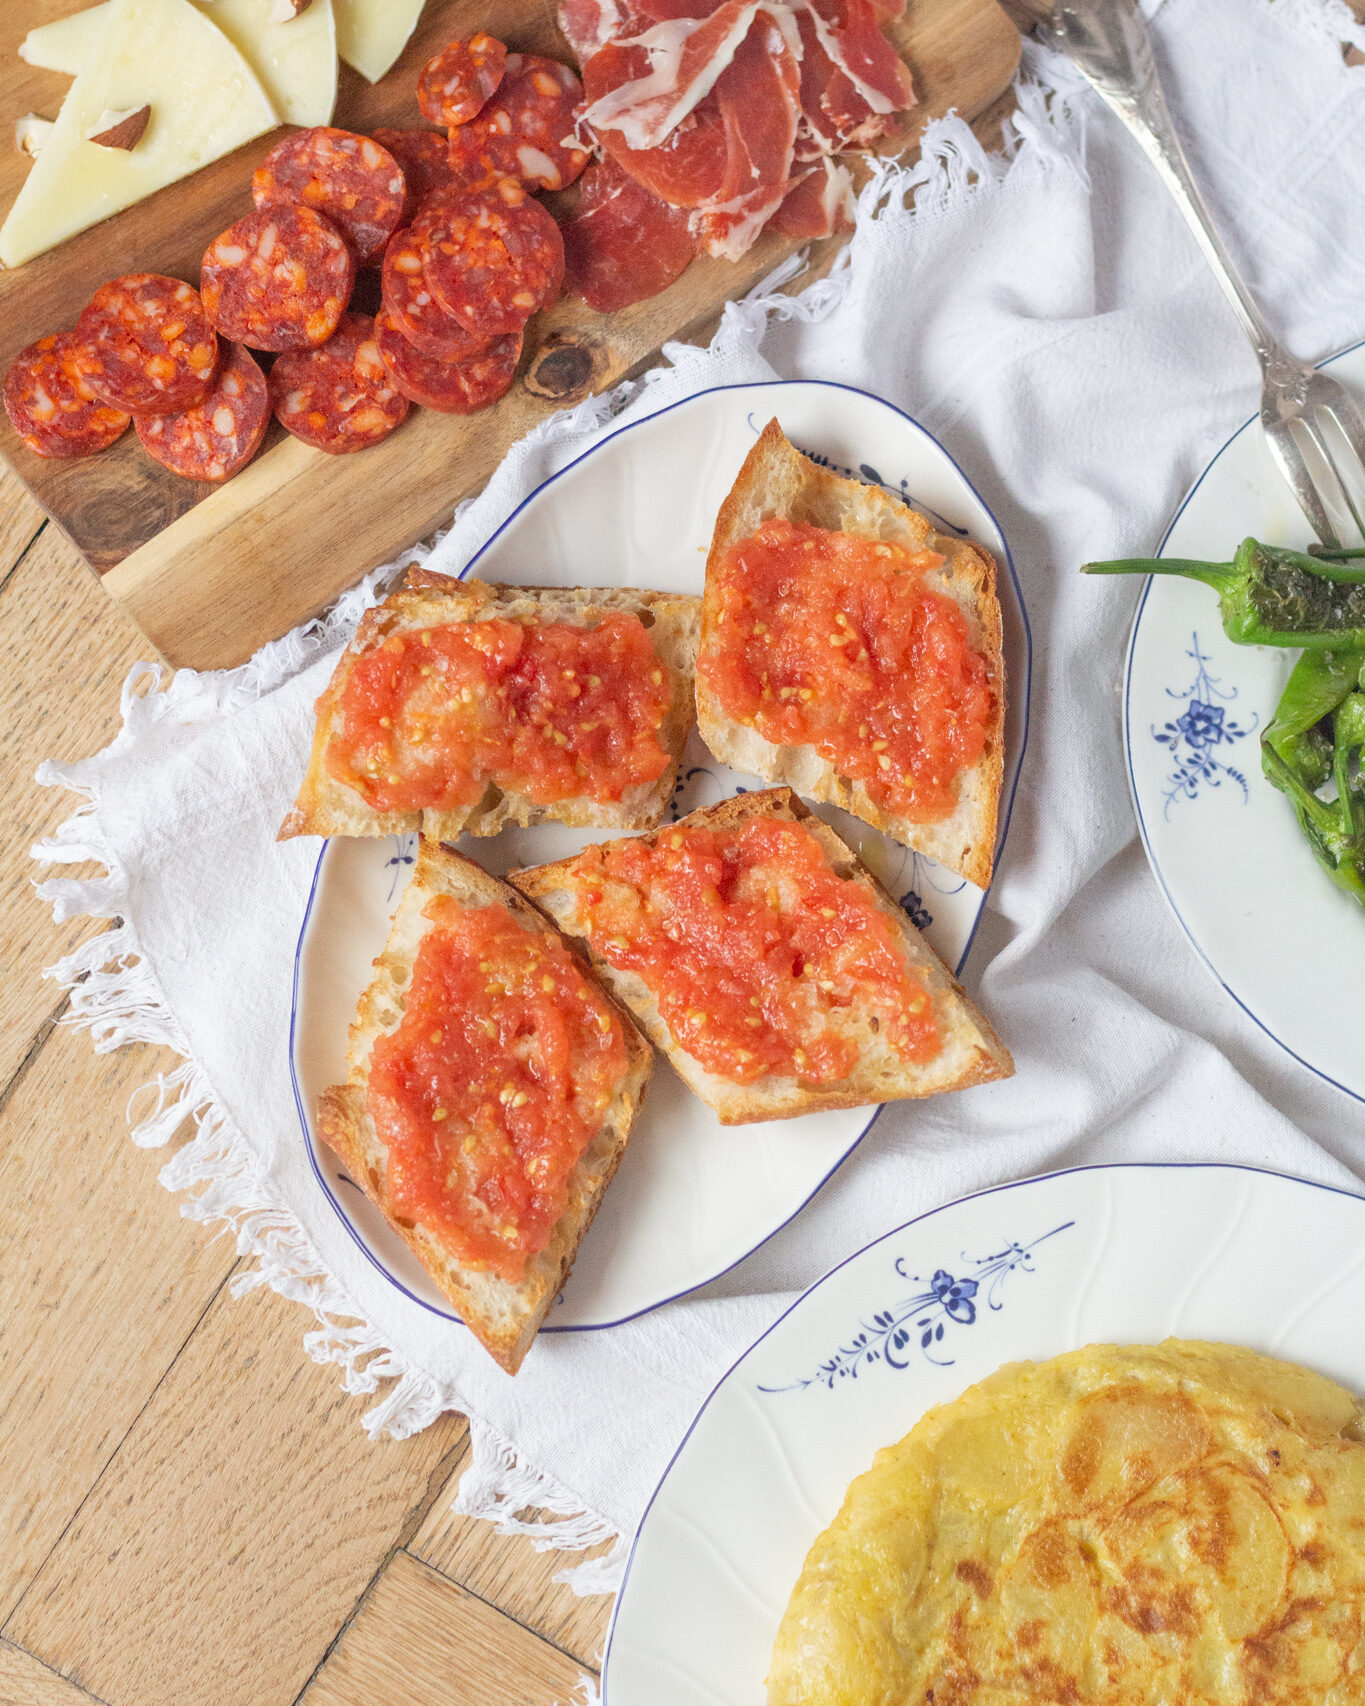 В Испании пан кон томате – многоролевое блюдо! Его подают на завтрак, как закуску к хамону, или сам по себе, как полноценную закуску.